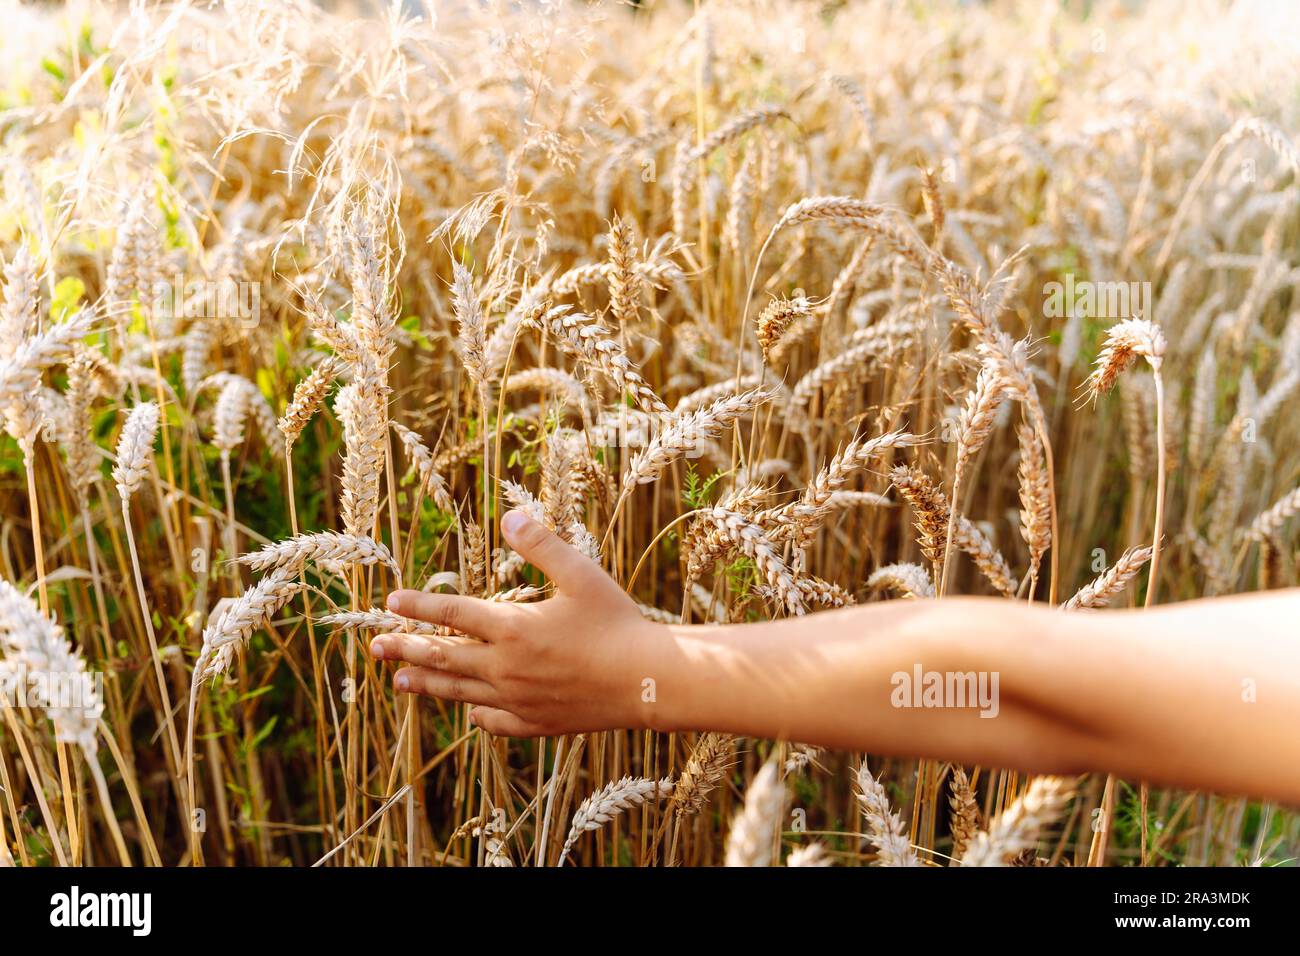 Die Hand eines Kindes läuft auf dem Feld über Weizenohren. Ein Junge berührt Getreide, das auf einem landwirtschaftlichen Feld angebaut wird Stockfoto